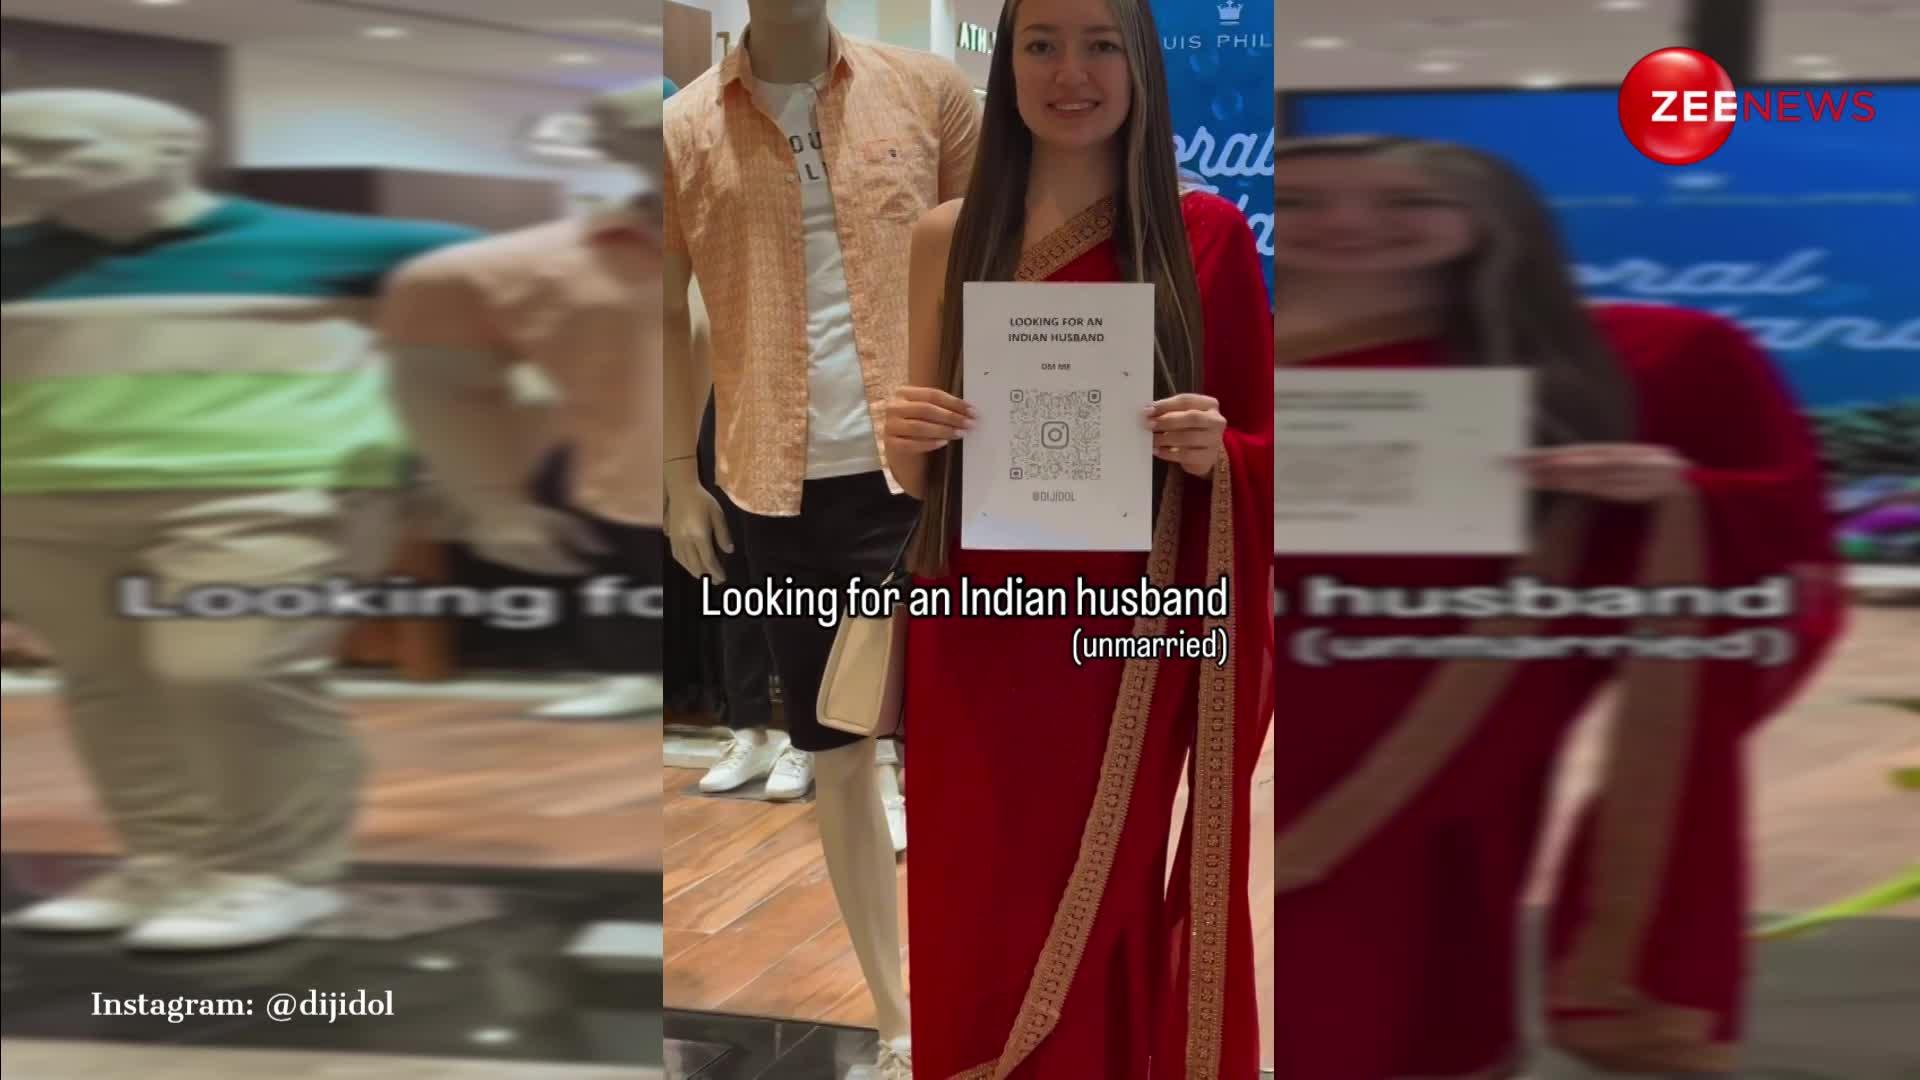 हाथ में QR कोड लेकर मार्केट में पति ढूंढने निकली रशियन लड़की, लोग बोले- पोपटलाल को भेज दो